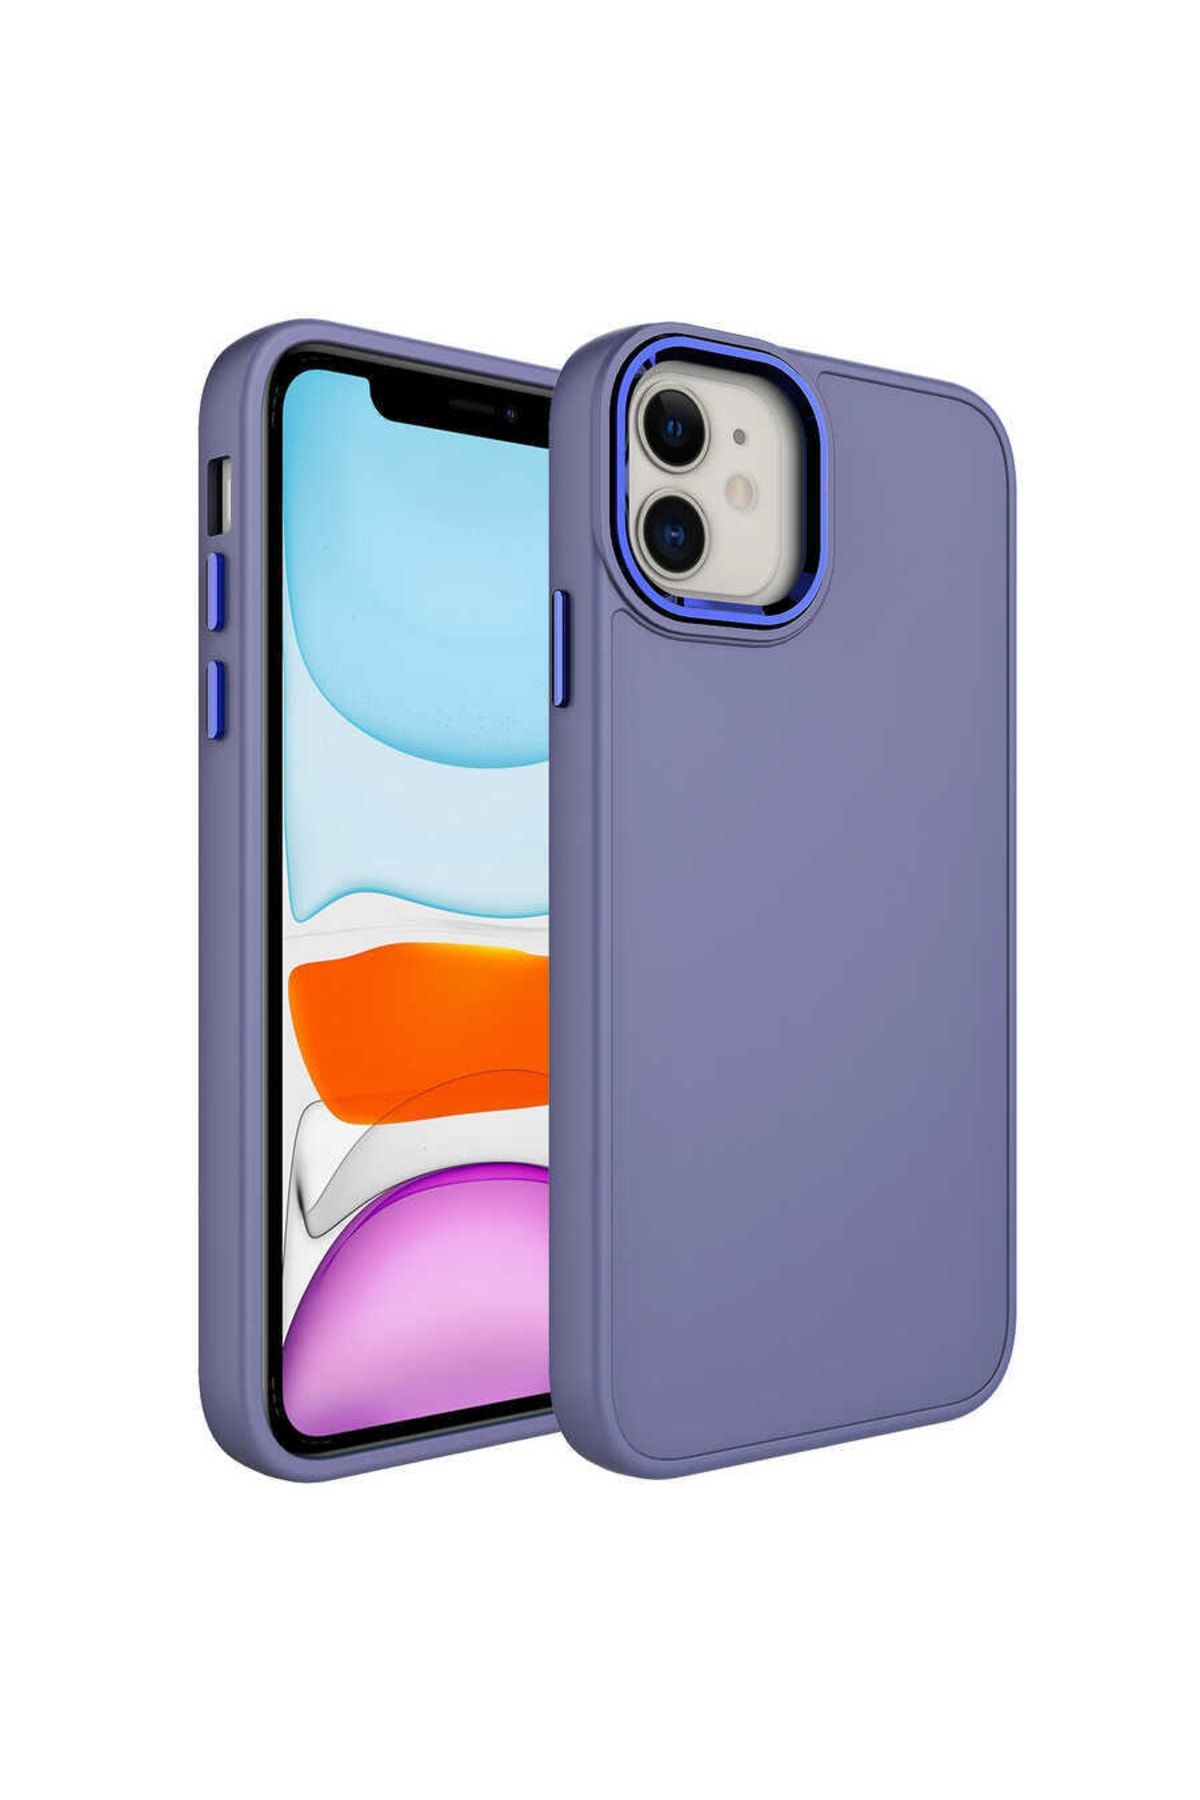 Zore Apple Iphone 11 Uyumlu Kılıf Metal Çerçeve Ve Buton Tasarımlı Silikon Luna Kapak (lavendery gr